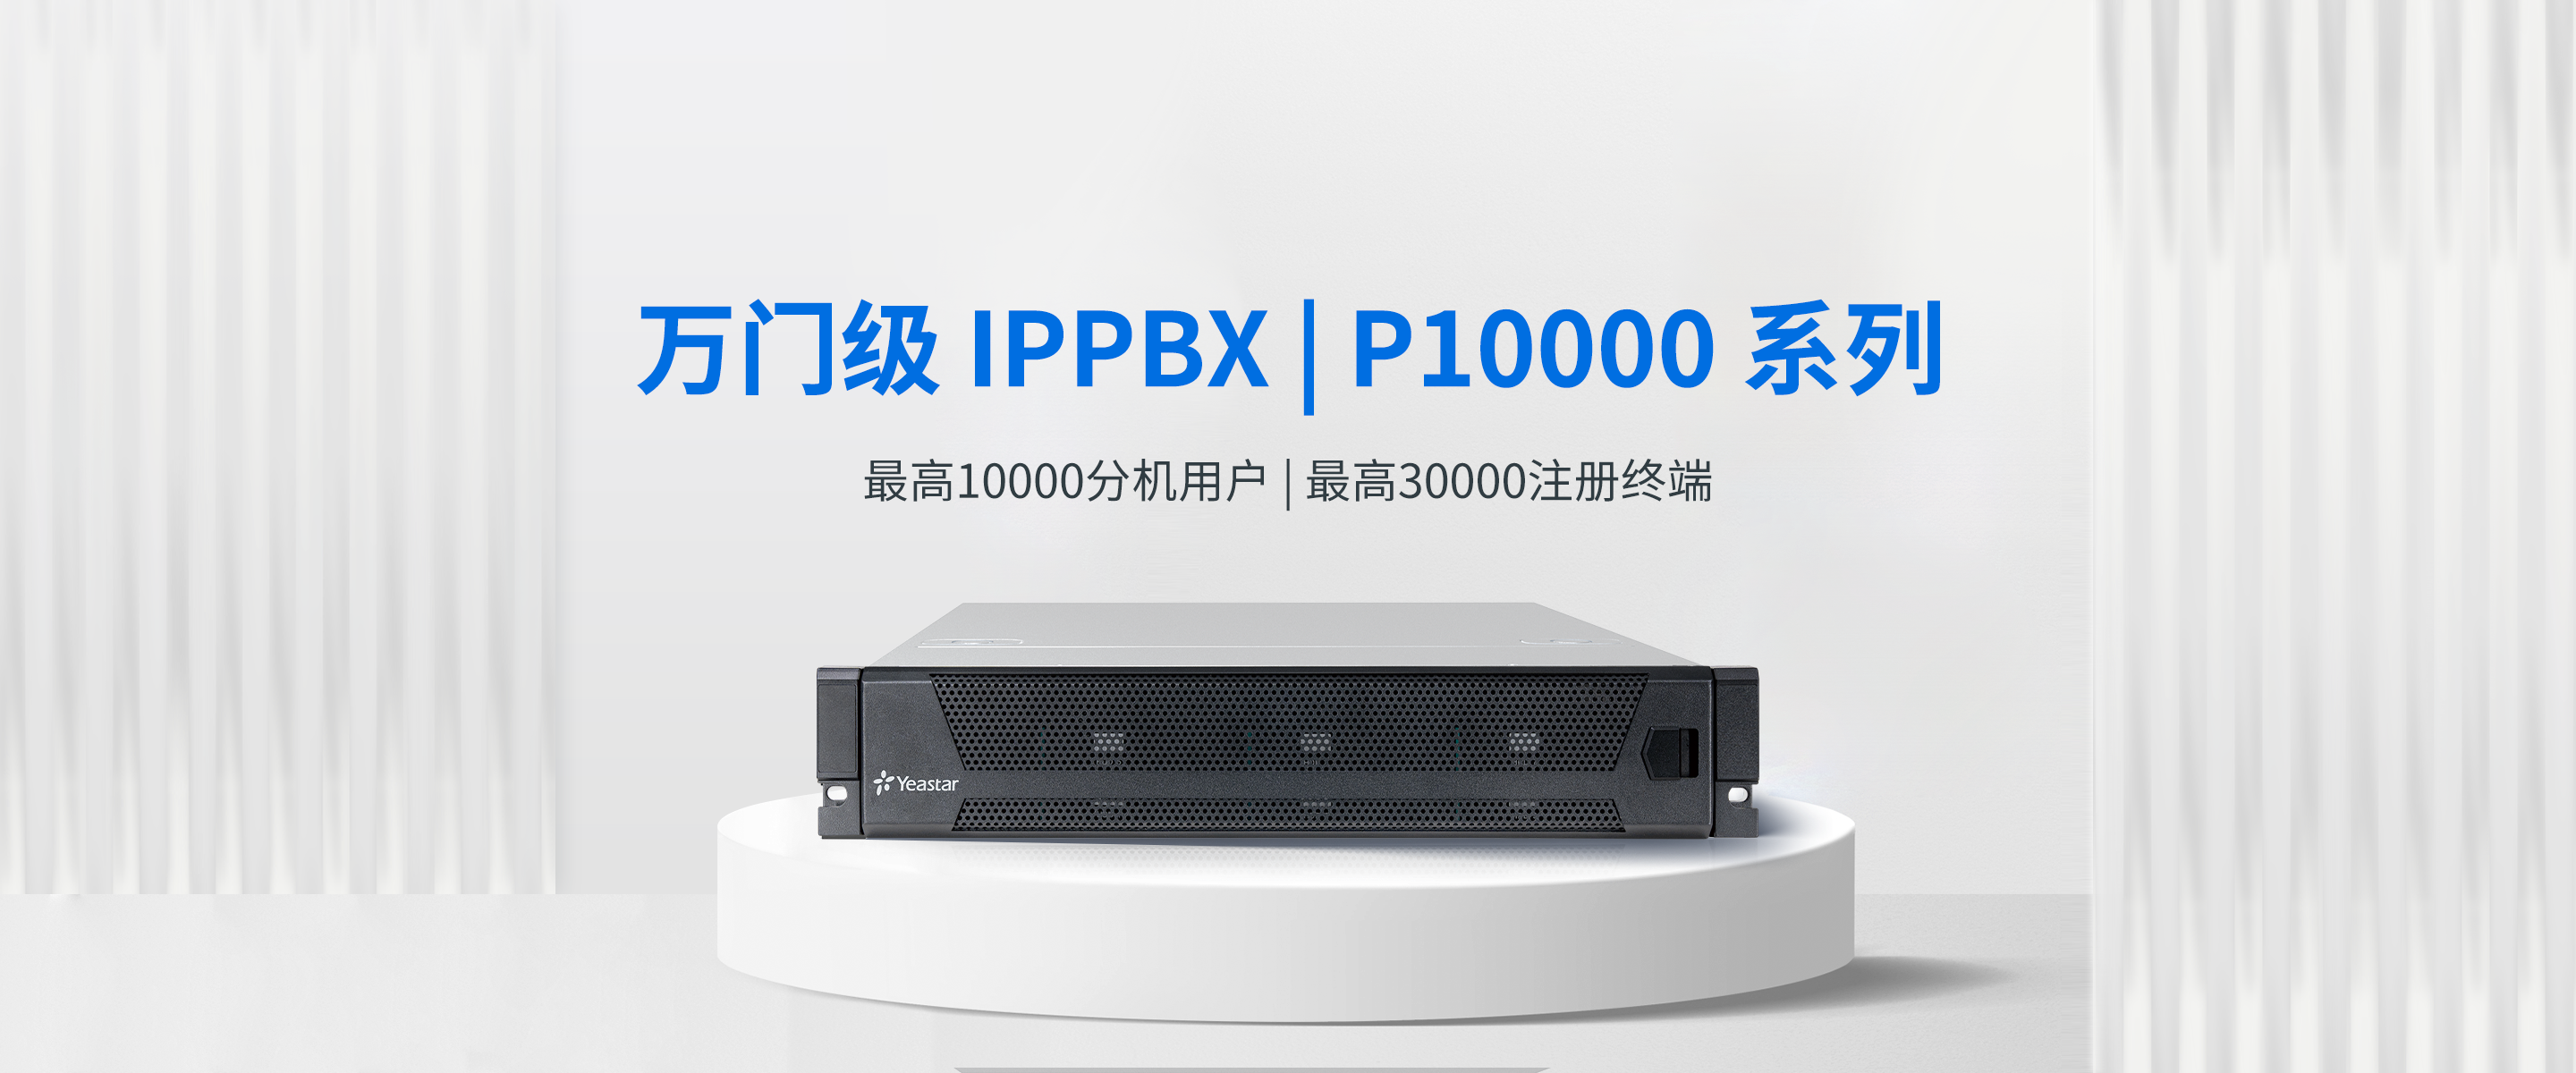 IPPBX P10000